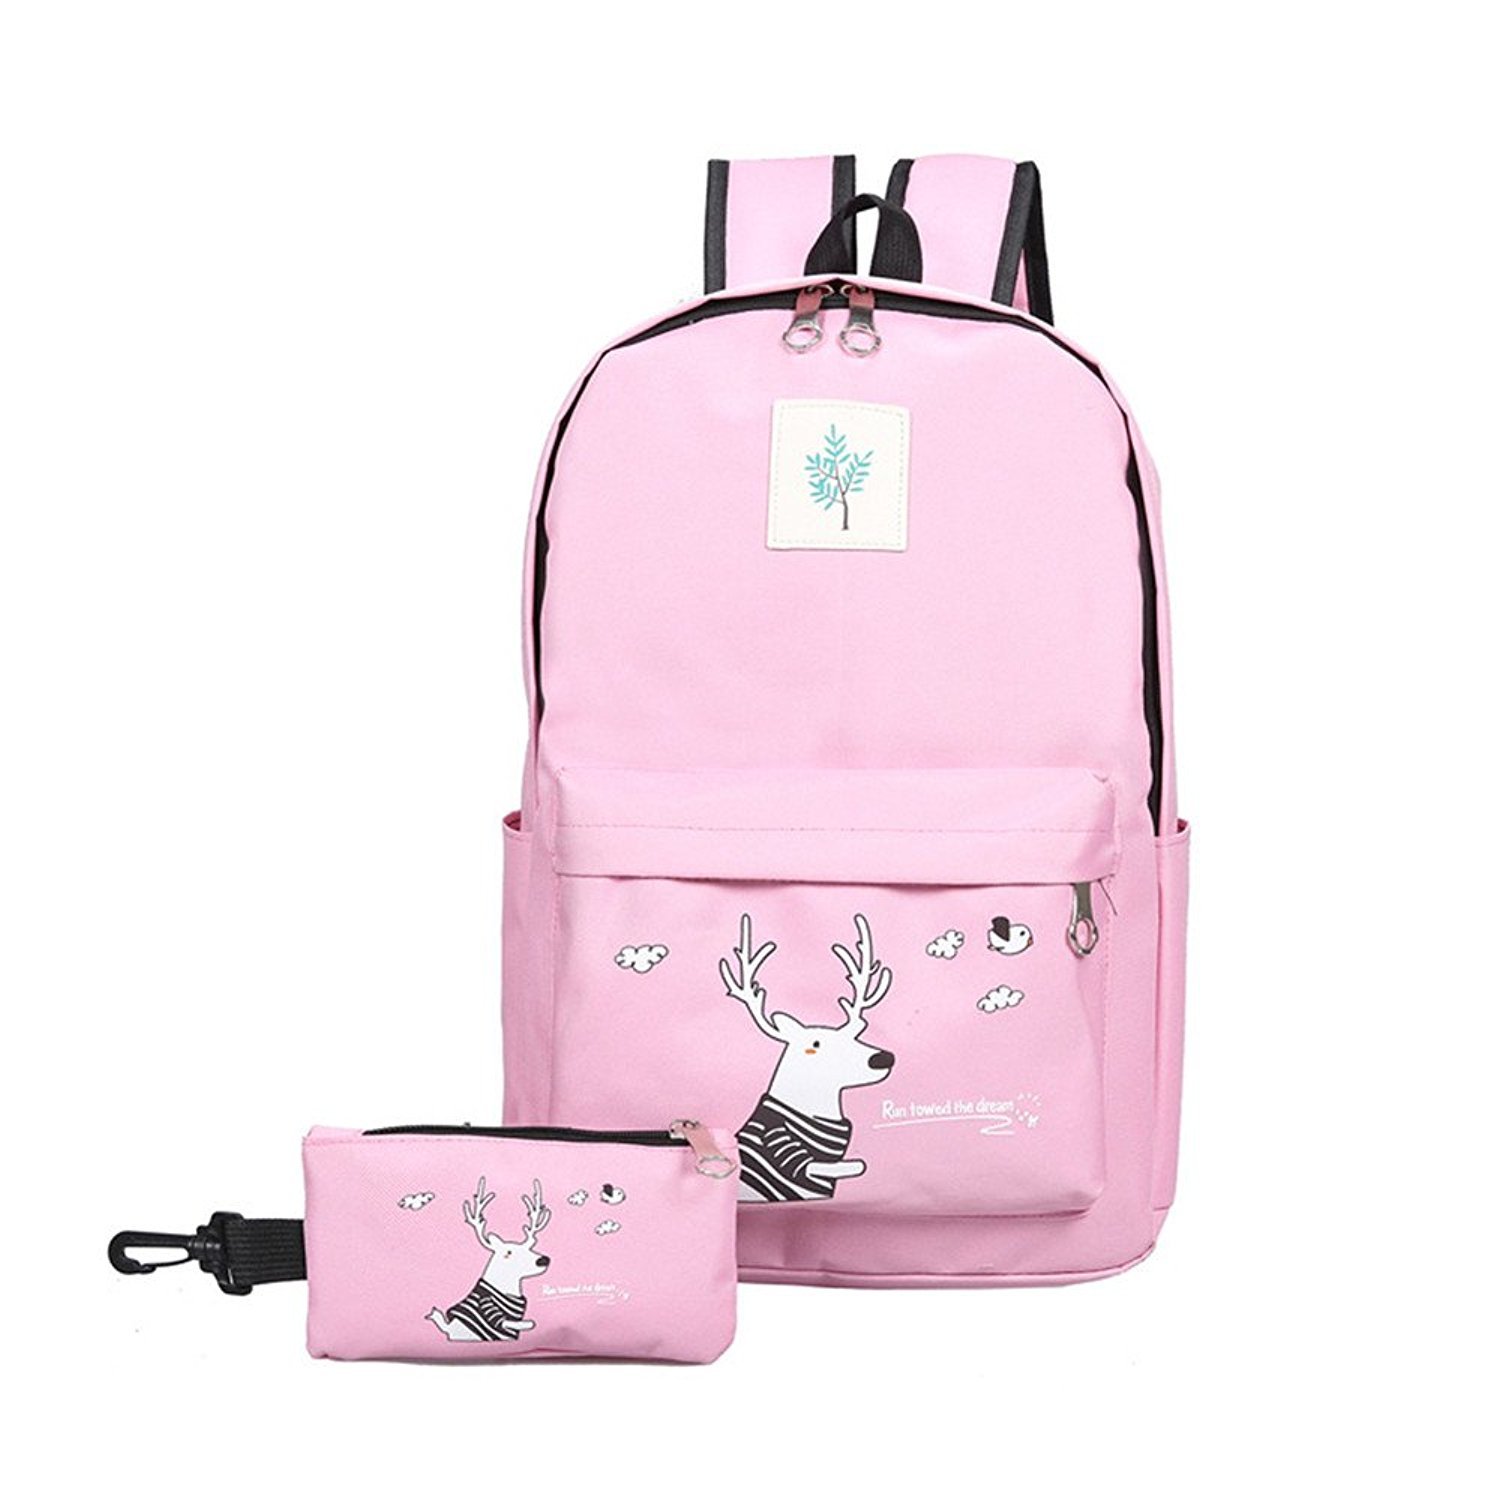 2Pcs Kids Girls Backpack for School Book Shoulder Bags Set for Teens Girls Boys - $26.99